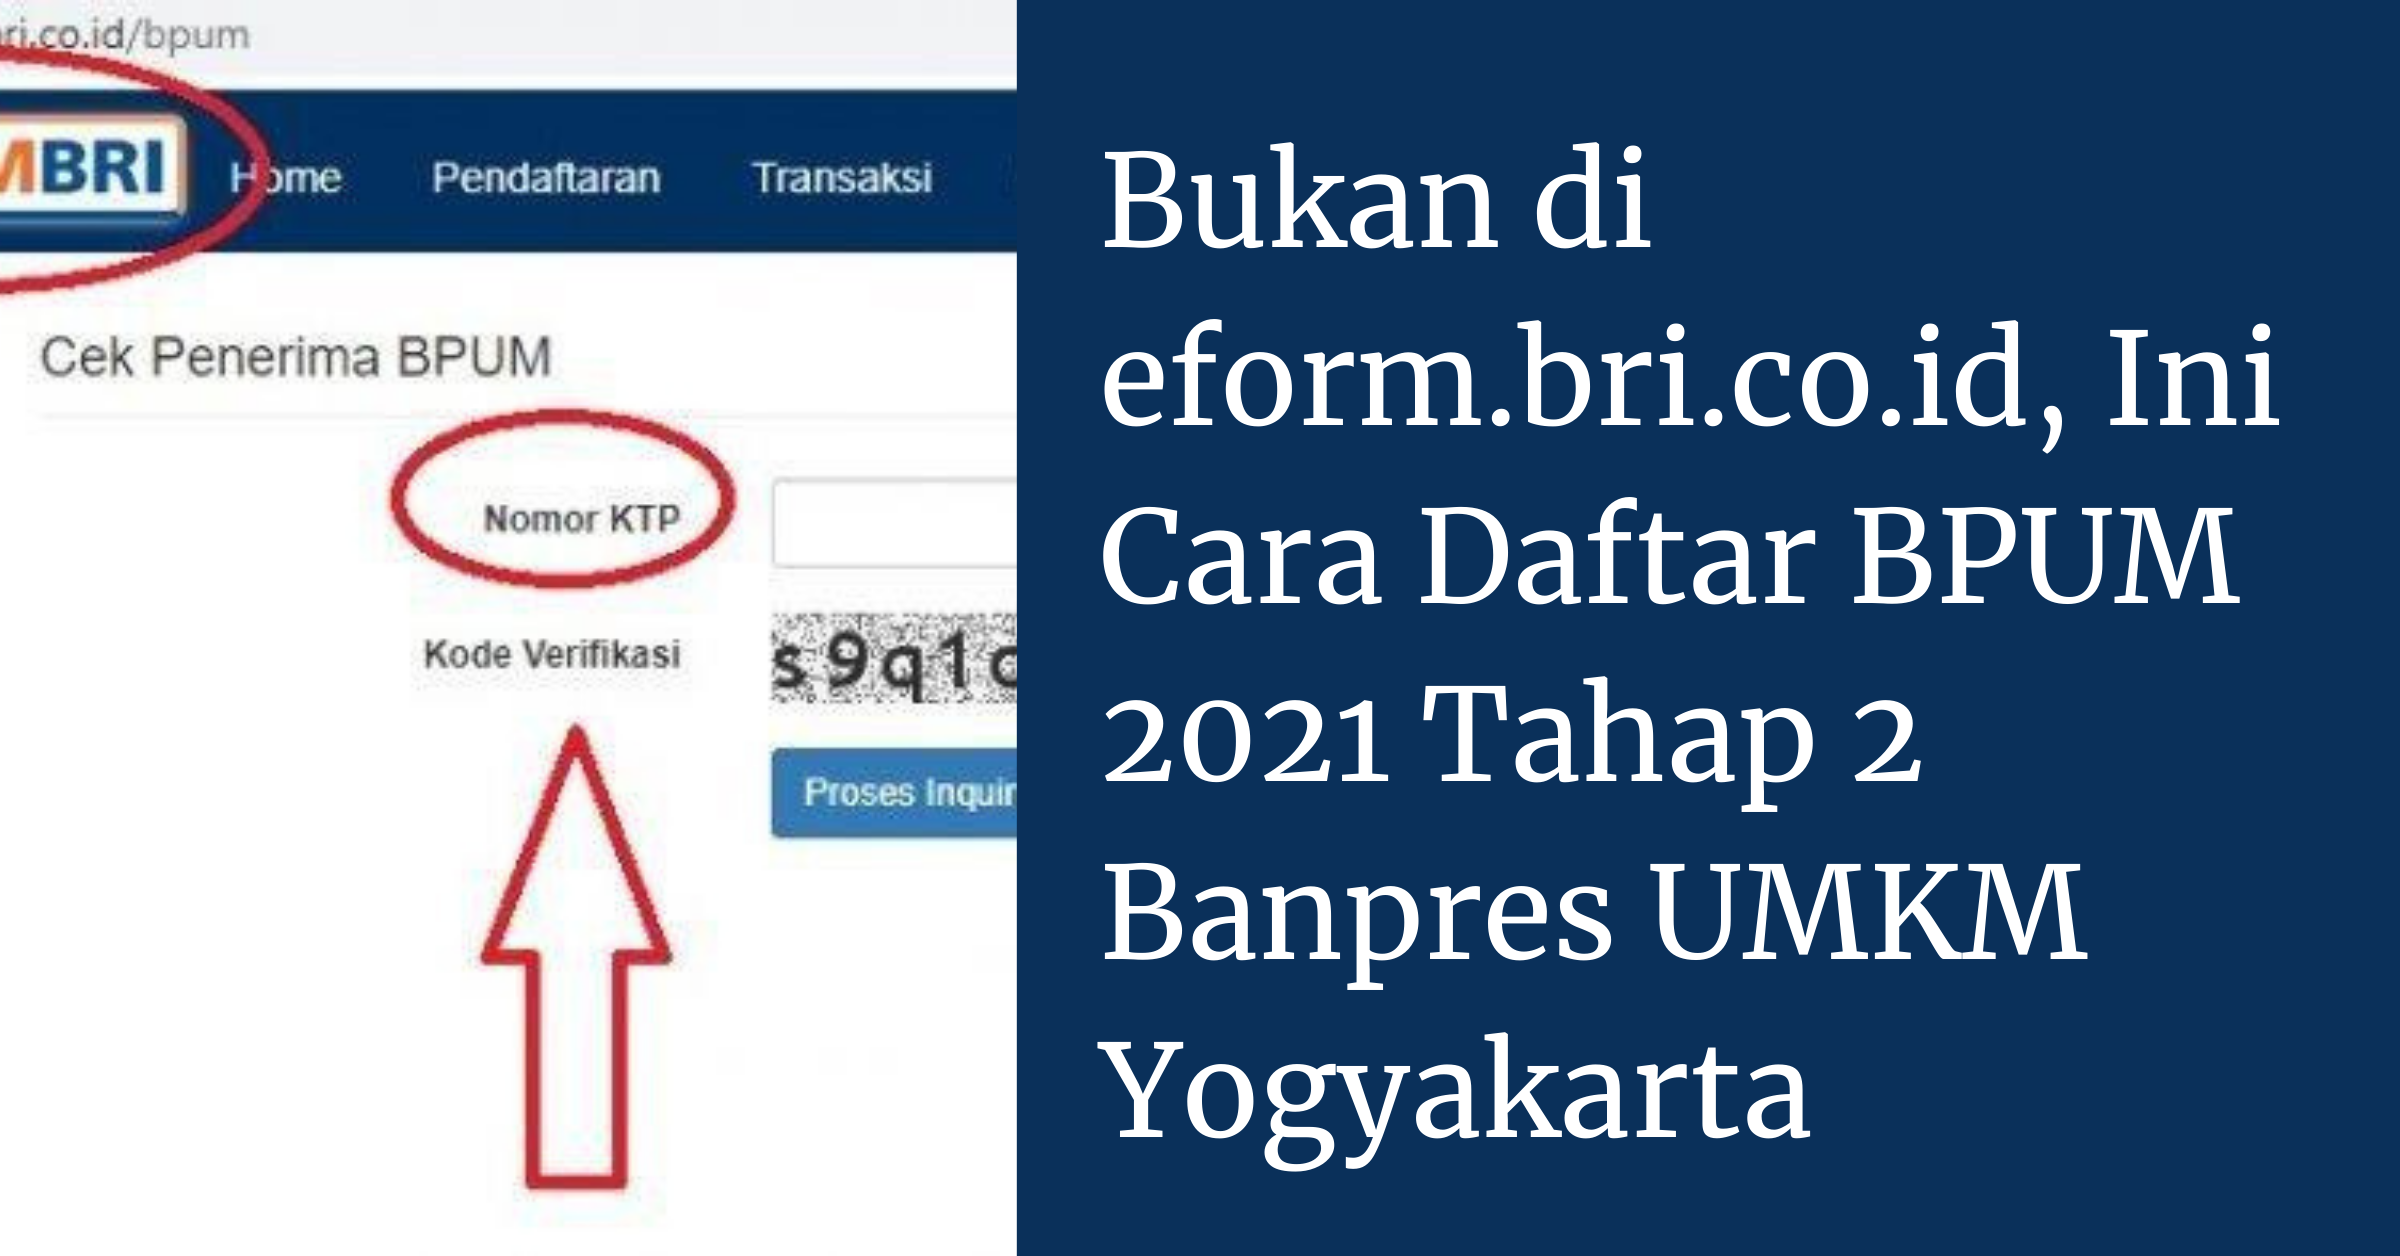 Cara Daftar BPUM 2021 Tahap 2 Banpres UMKM Yogyakarta ...